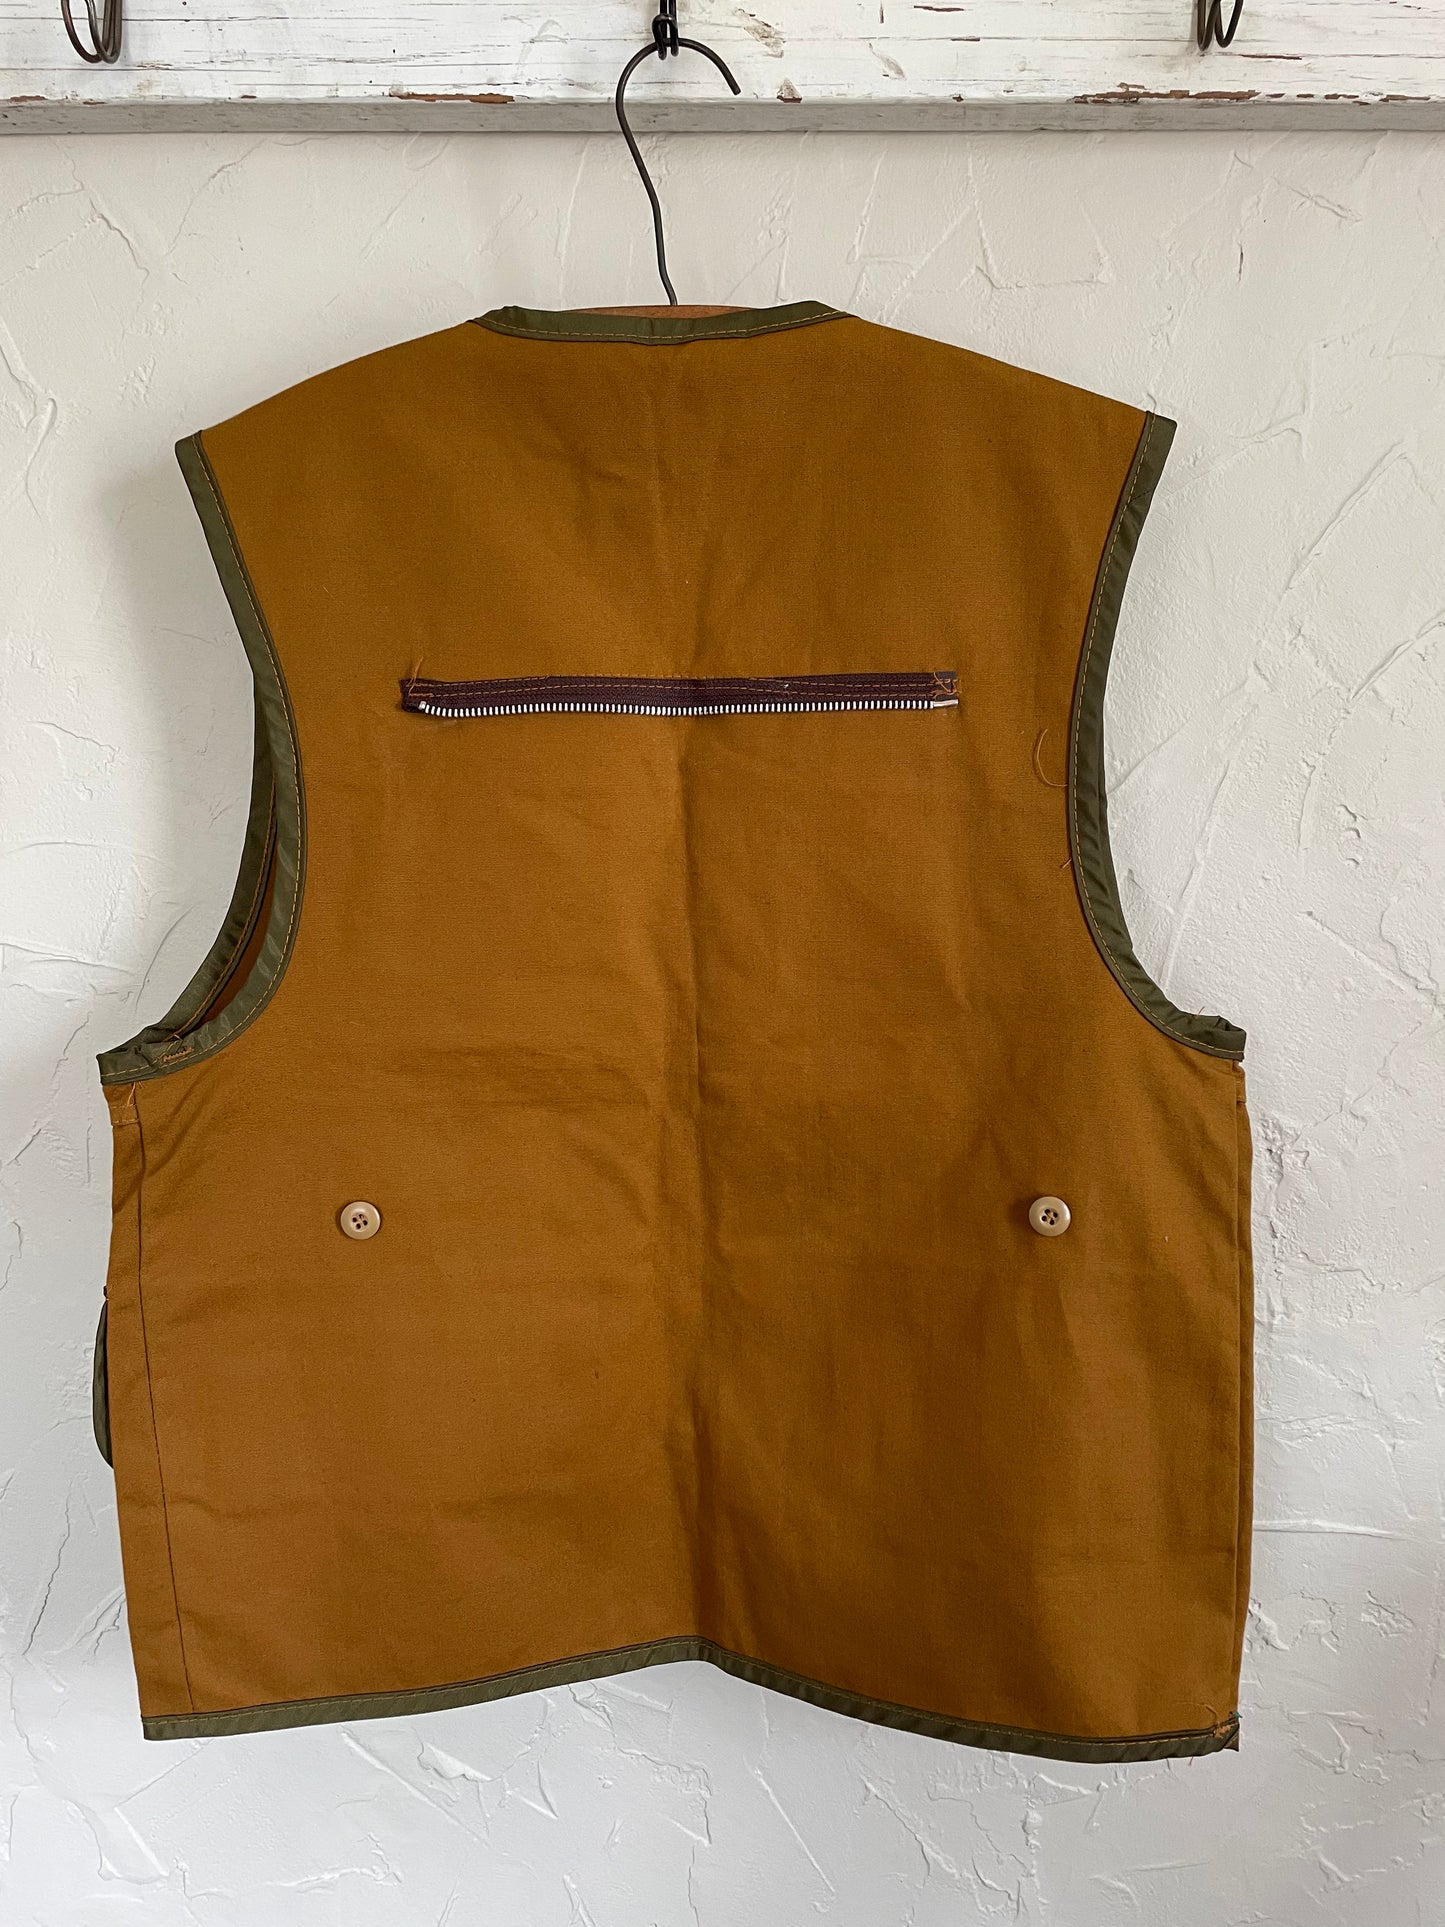 70s Deadstock Hunting Vest